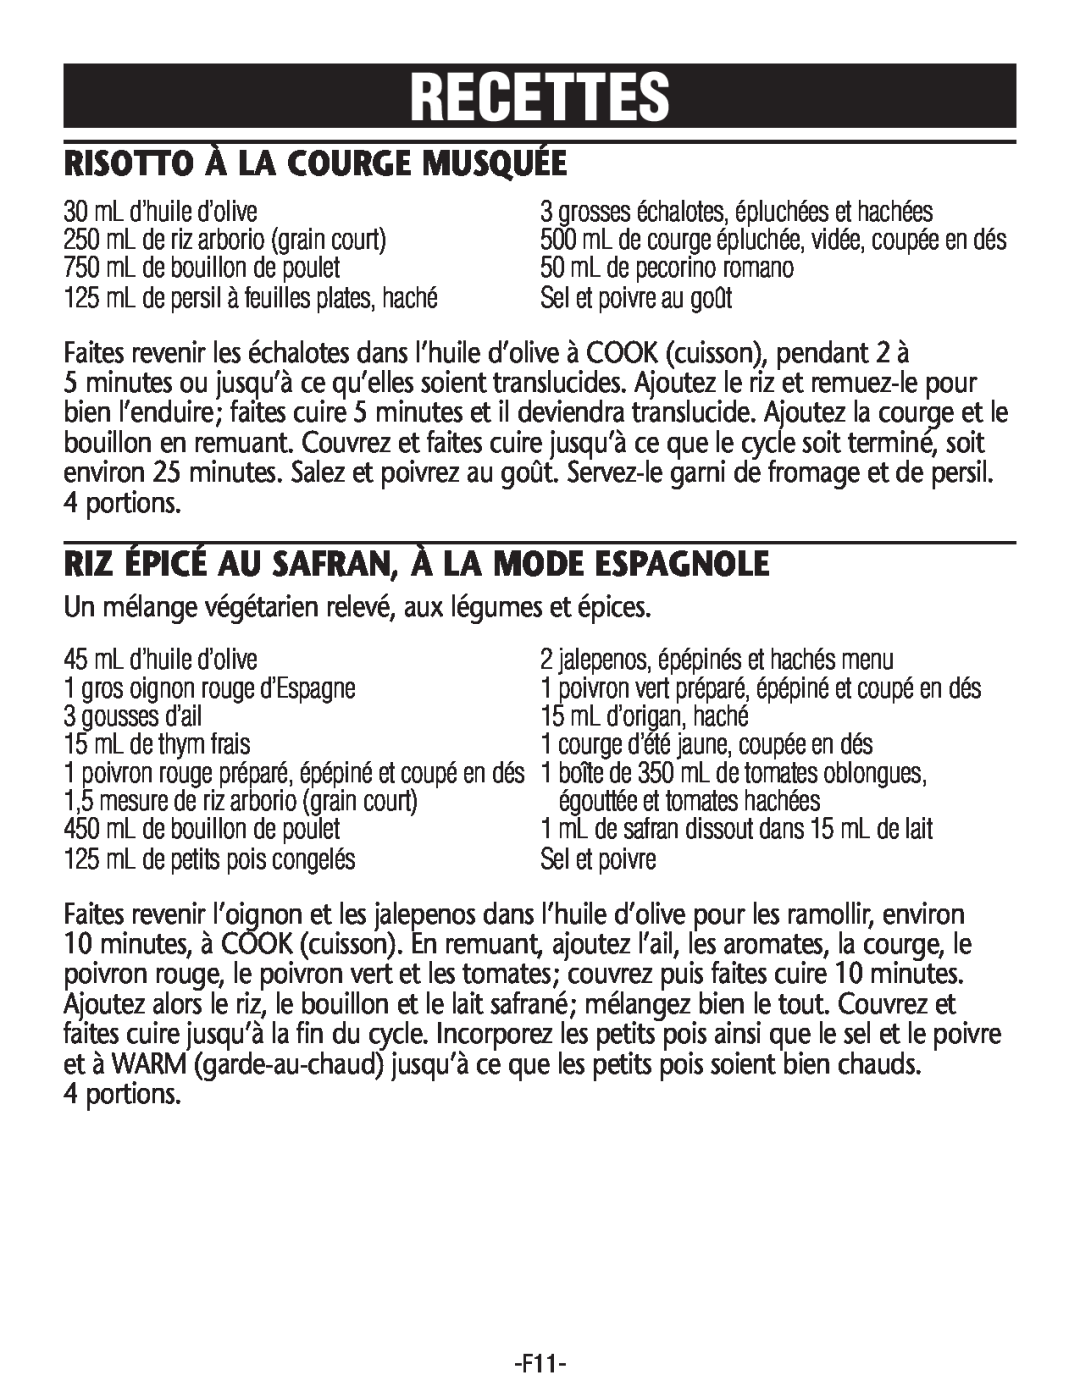 Rival RC101, RC100 manual Recettes, Risotto À La Courge Musquée, Riz Épicé Au Safran, À La Mode Espagnole 